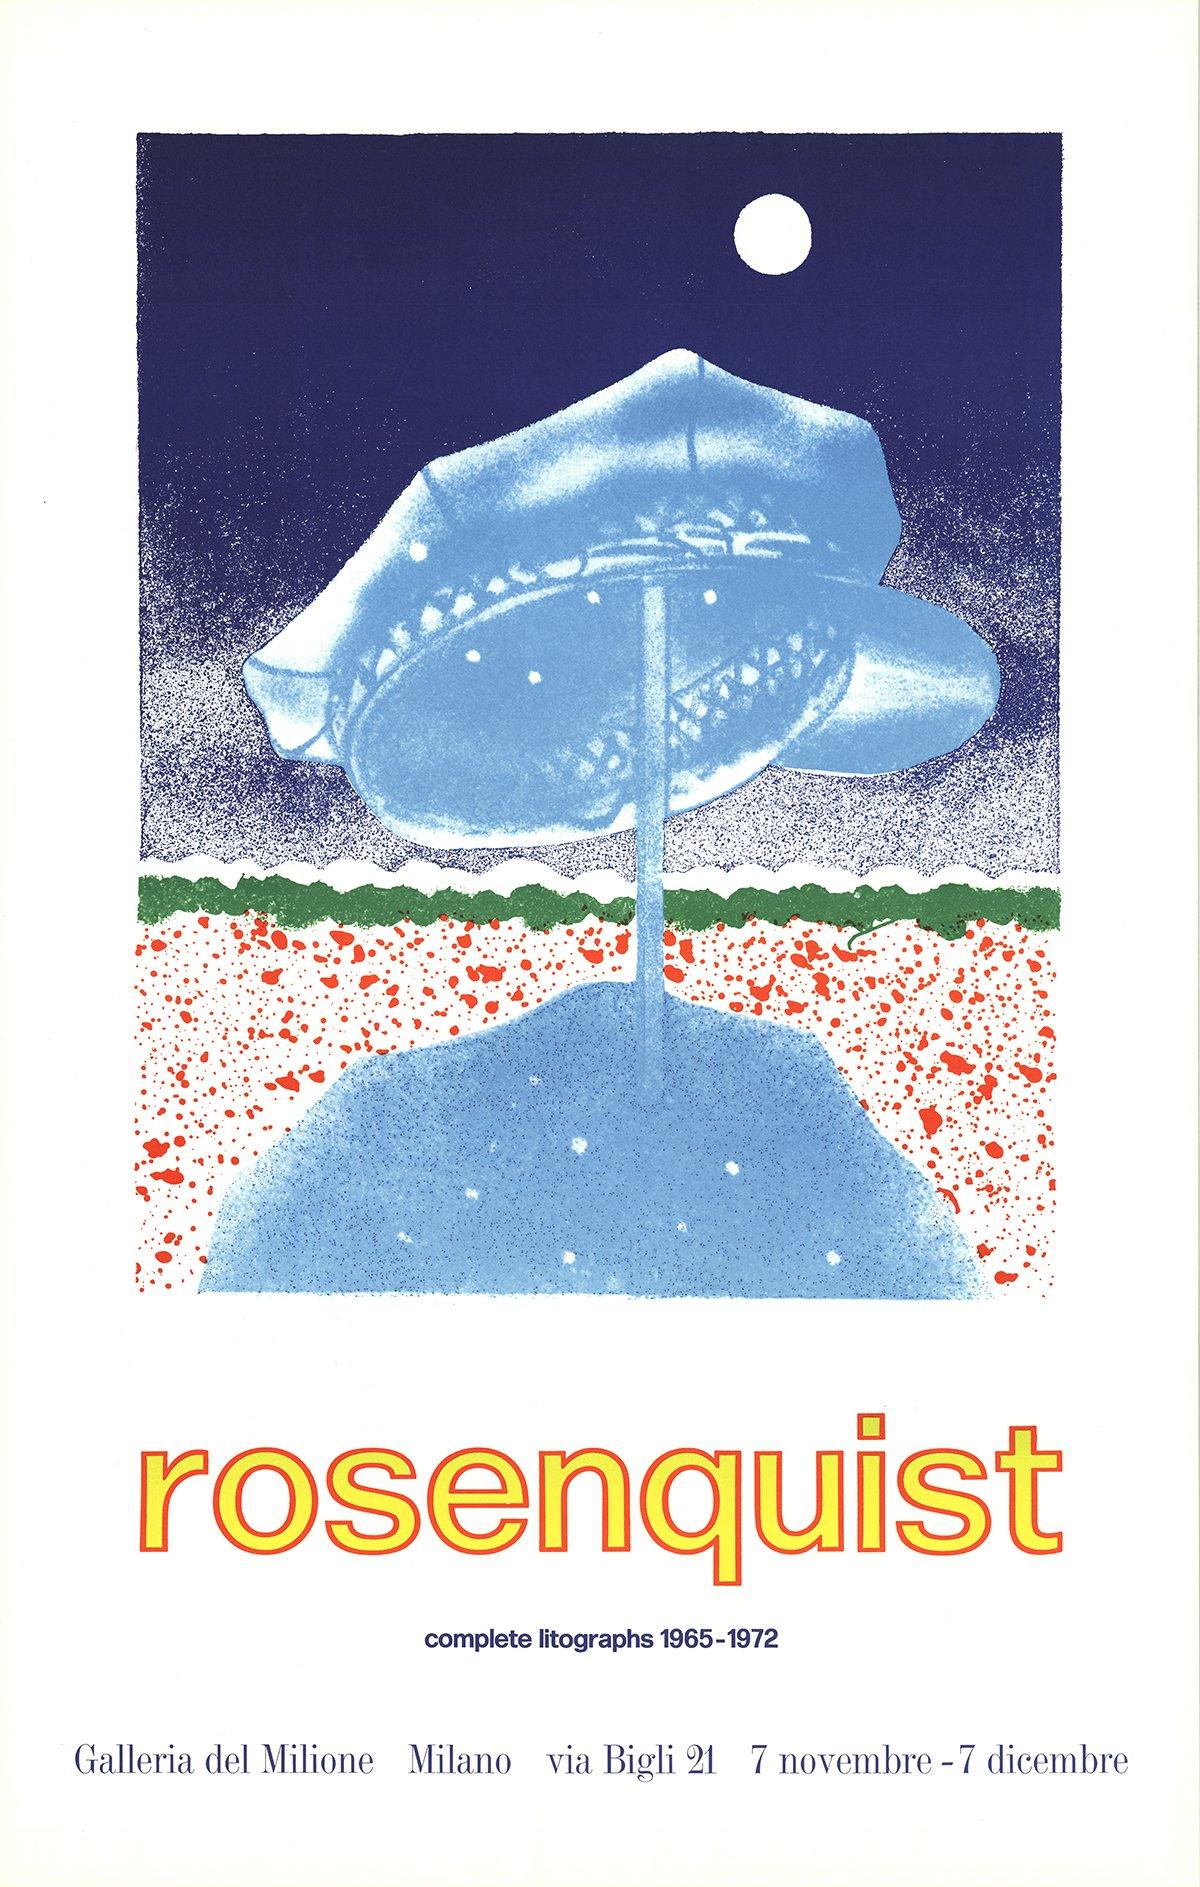  Taille du papier : 32.5 x 20.75 pouces ( 82.55 x 52.705 cm )
 Taille de l'image : 20 x 16 pouces ( 50.8 x 40.64 cm )
 Encadré : Non
 Condit : A : Mint
 
 Détails supplémentaires : Lithographie issue de l'exposition de Rosenquist intitulée "Complete